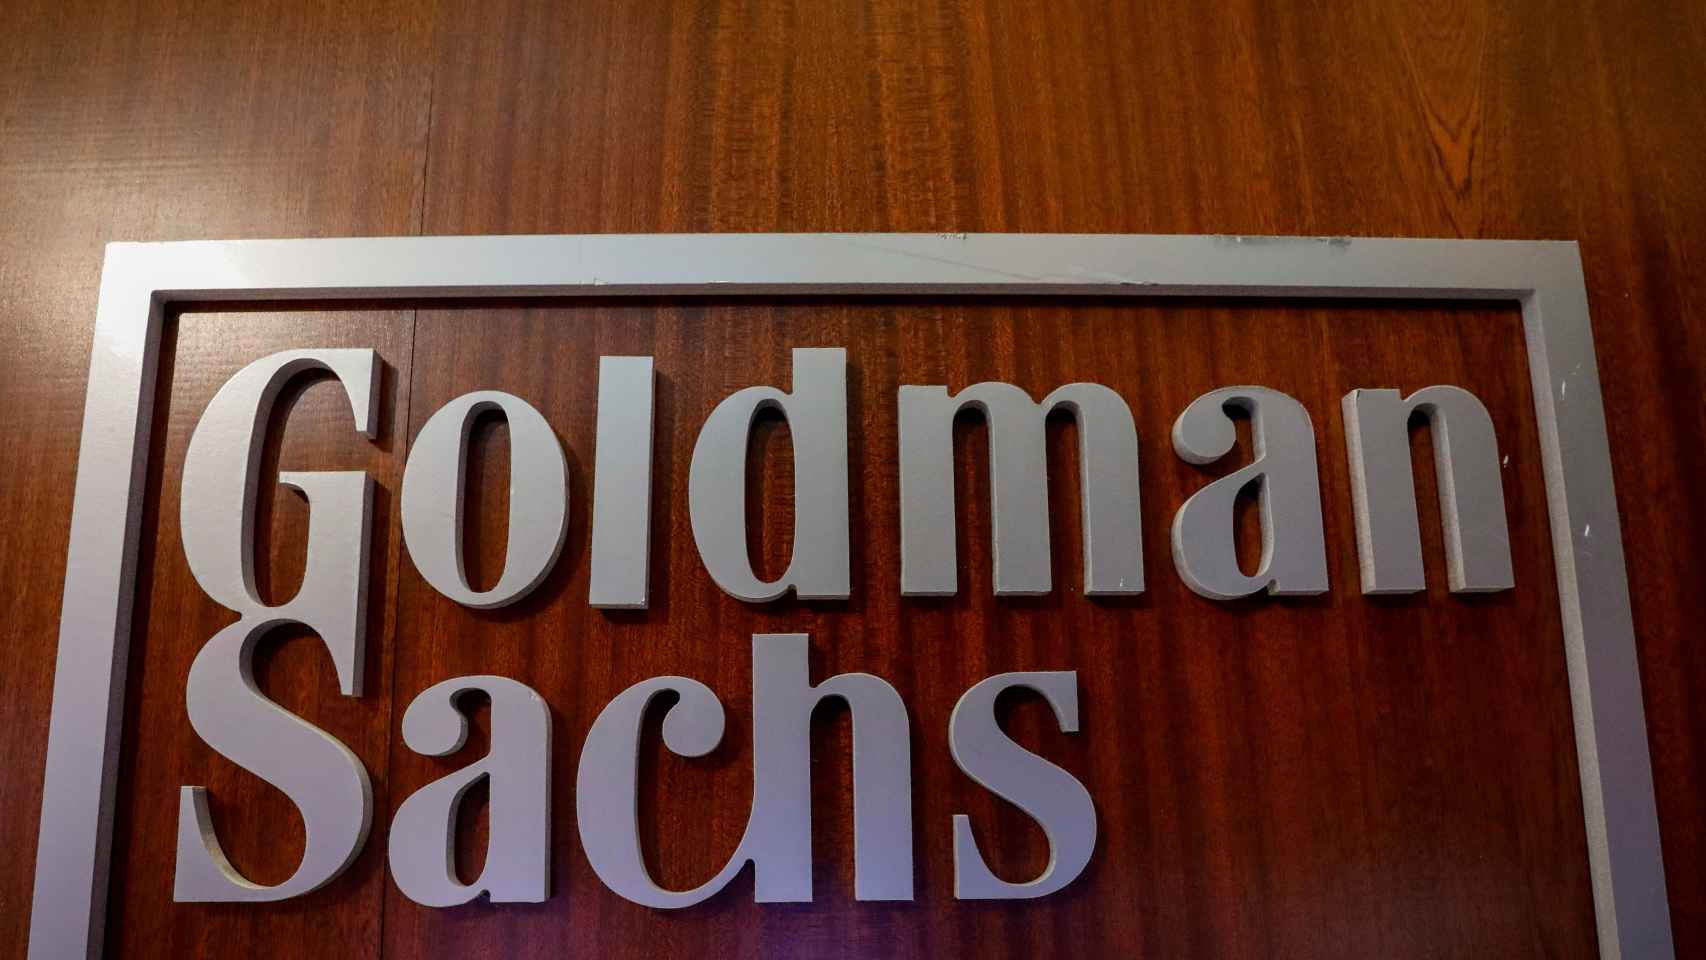 El logo de Goldman Sachs en una imagen de archivo.